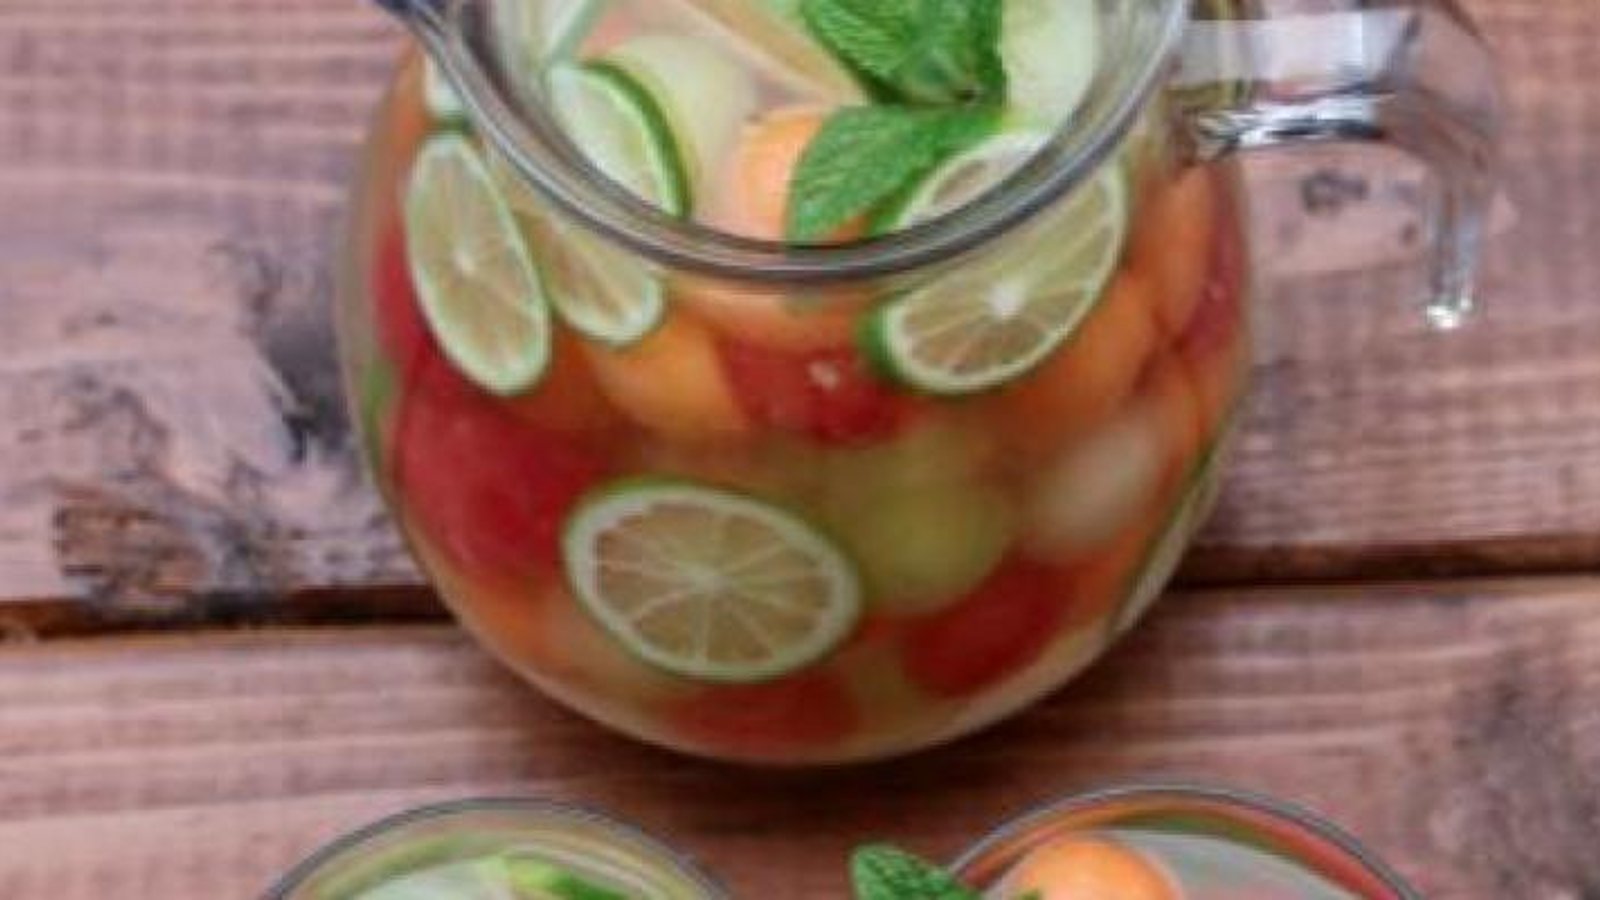 La recette de sangria parfaite pour l'été: La sangria aux 3 melons!